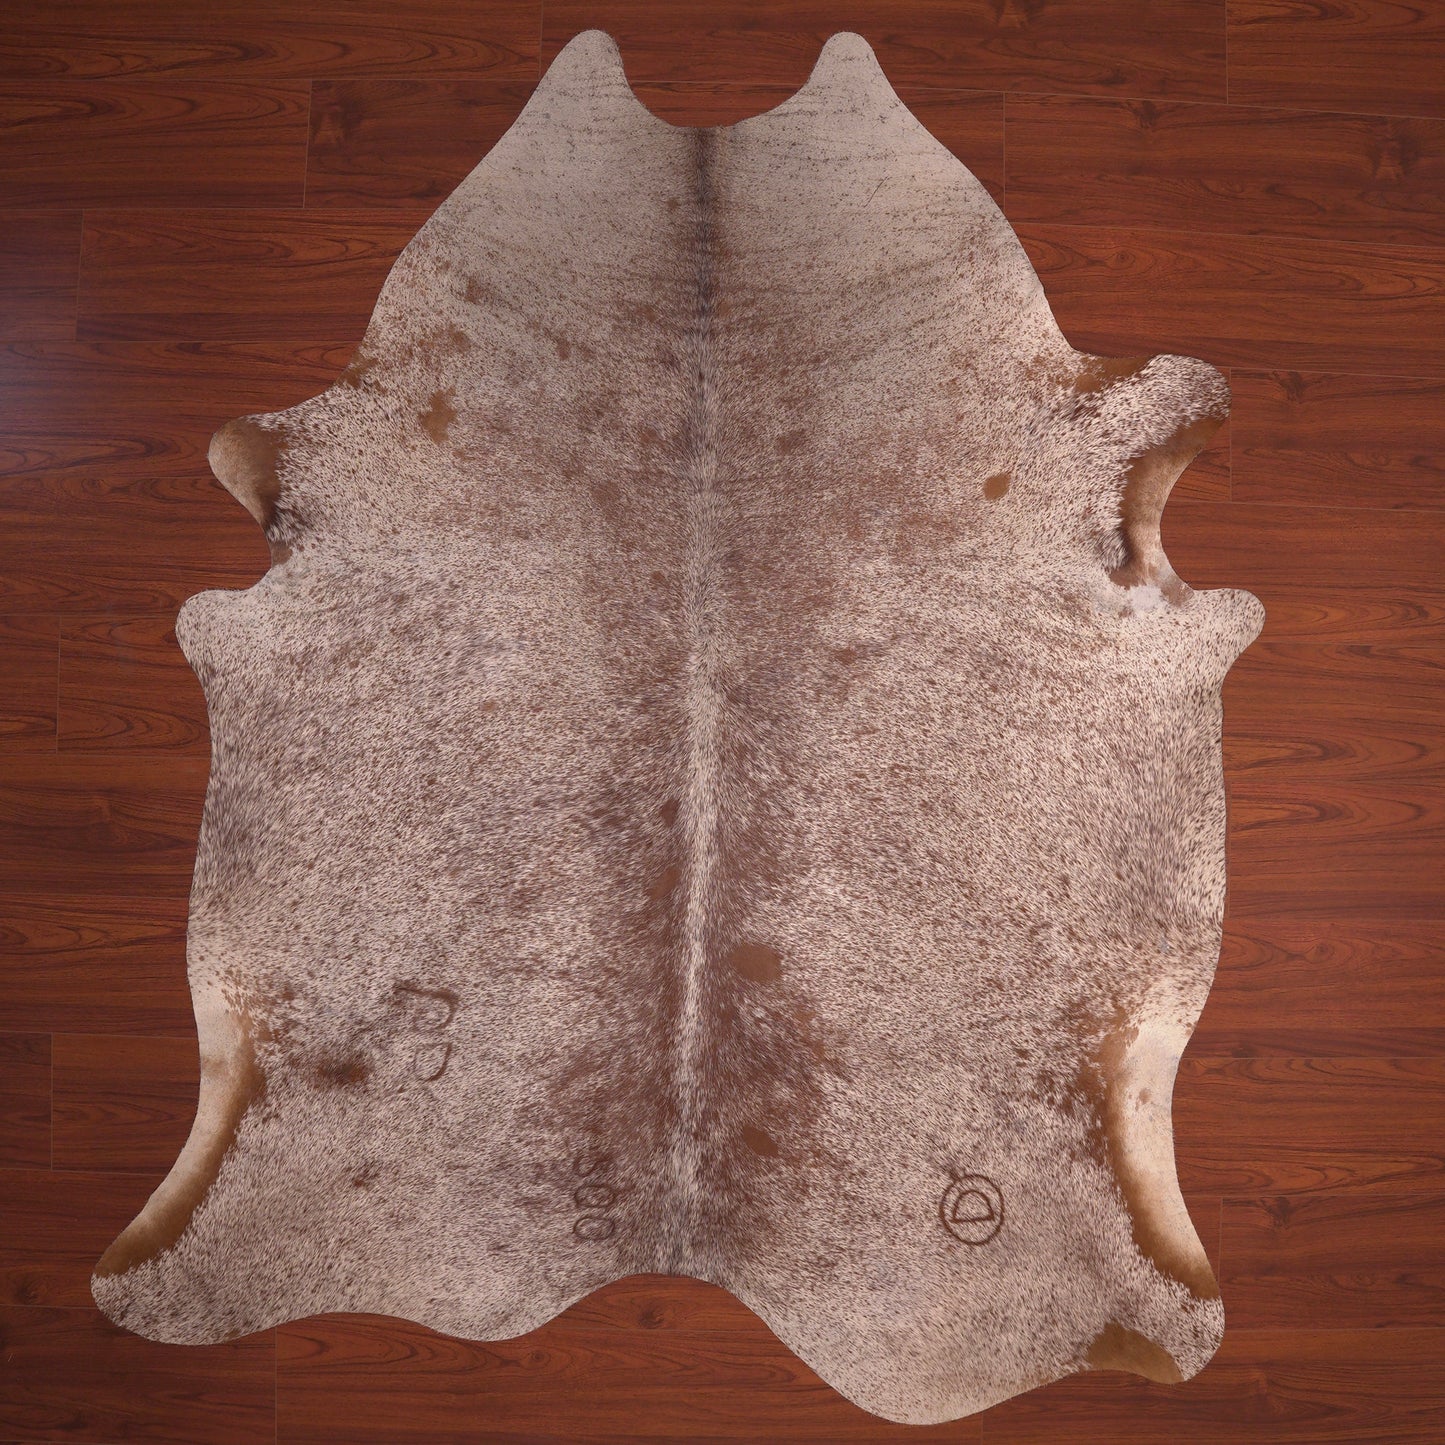 speckled cowhide skin rug